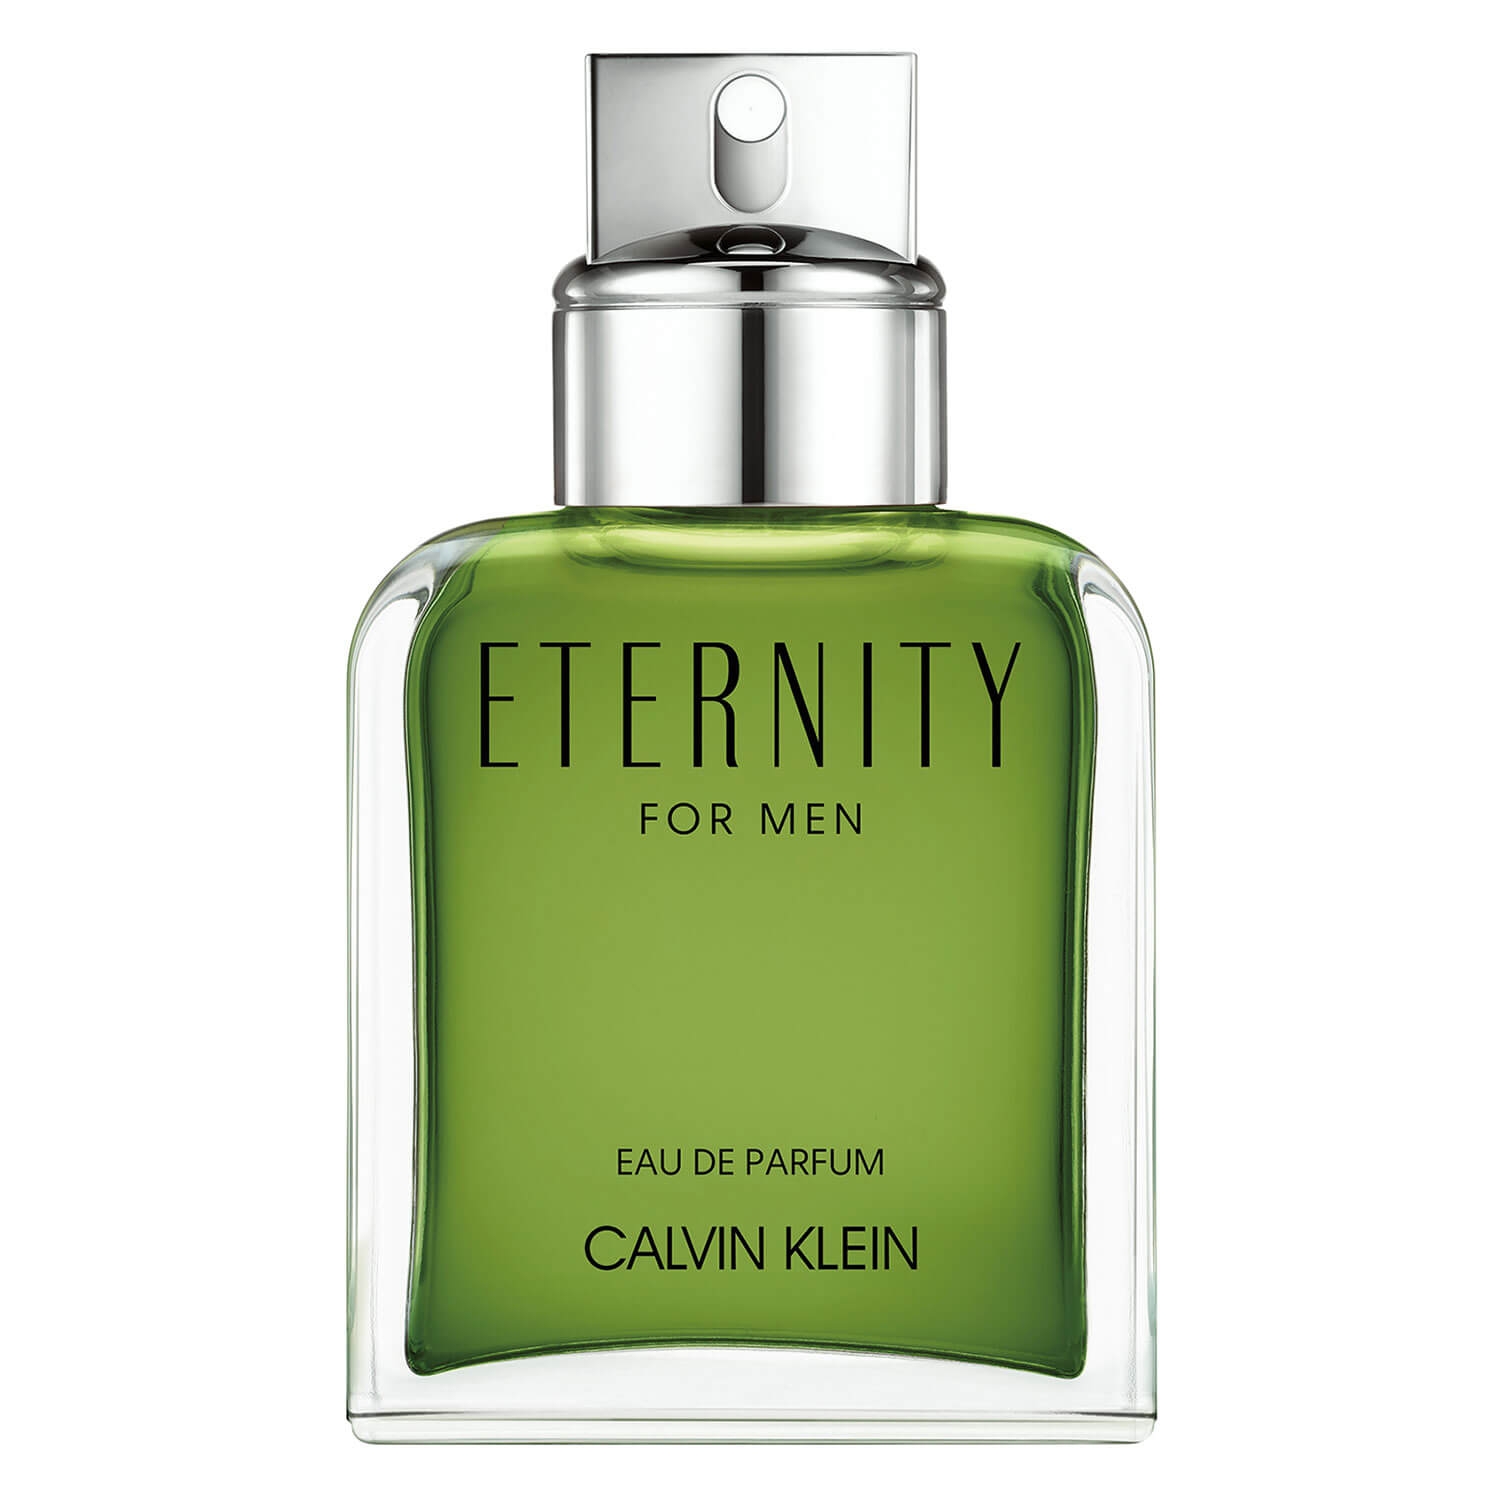 Product image from Eternity - Male Eau de Parfum